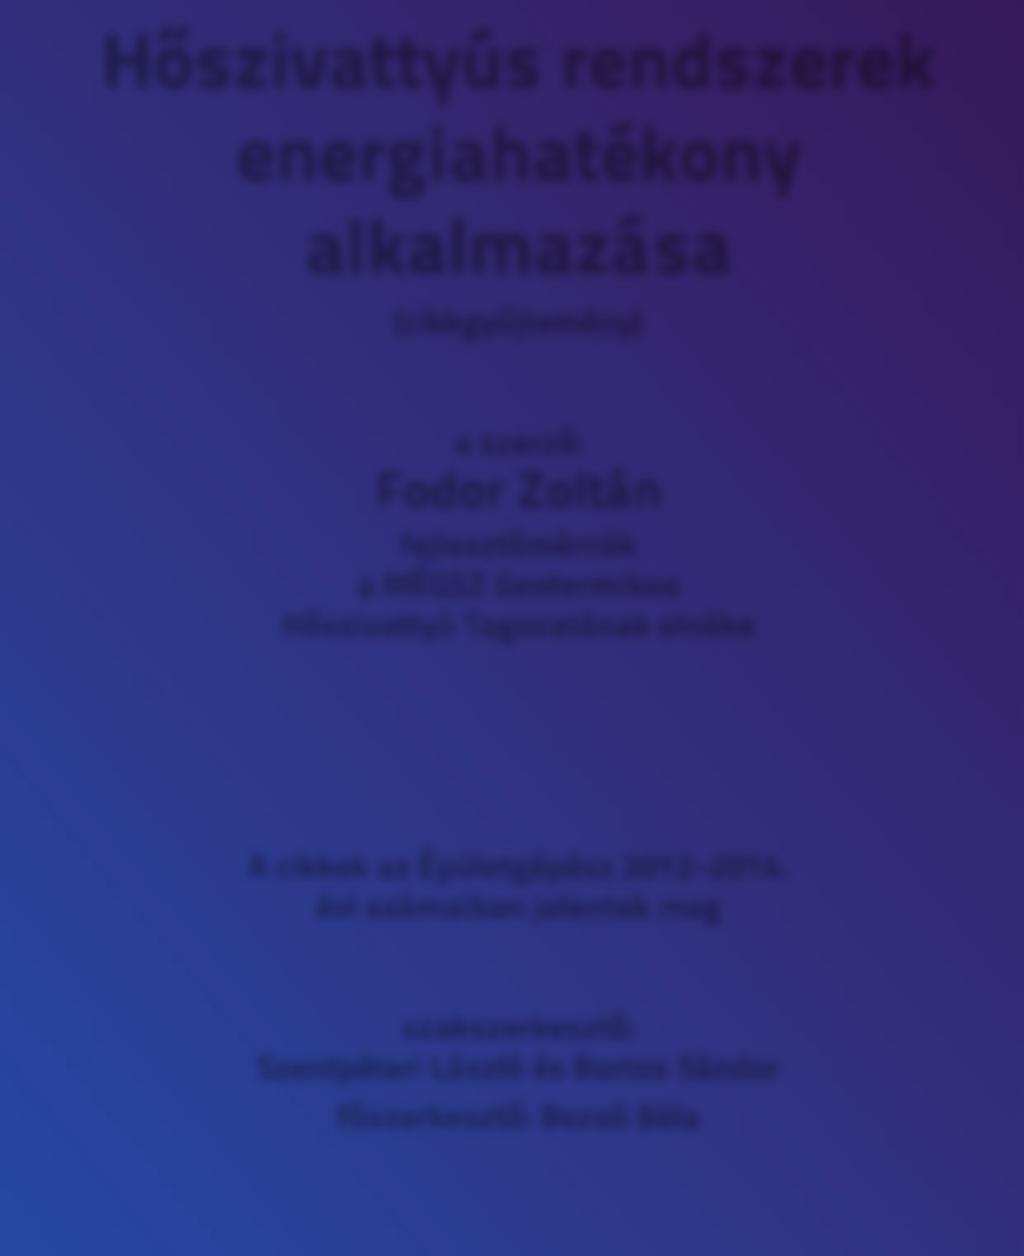 Hőszivattyús rendszerek energiahatékony alkalmazása (cikkgyűjtemény) a szerző: Fodor Zoltán fejlesztőmérnök a MÉGSZ Geotermikus Hőszivattyú